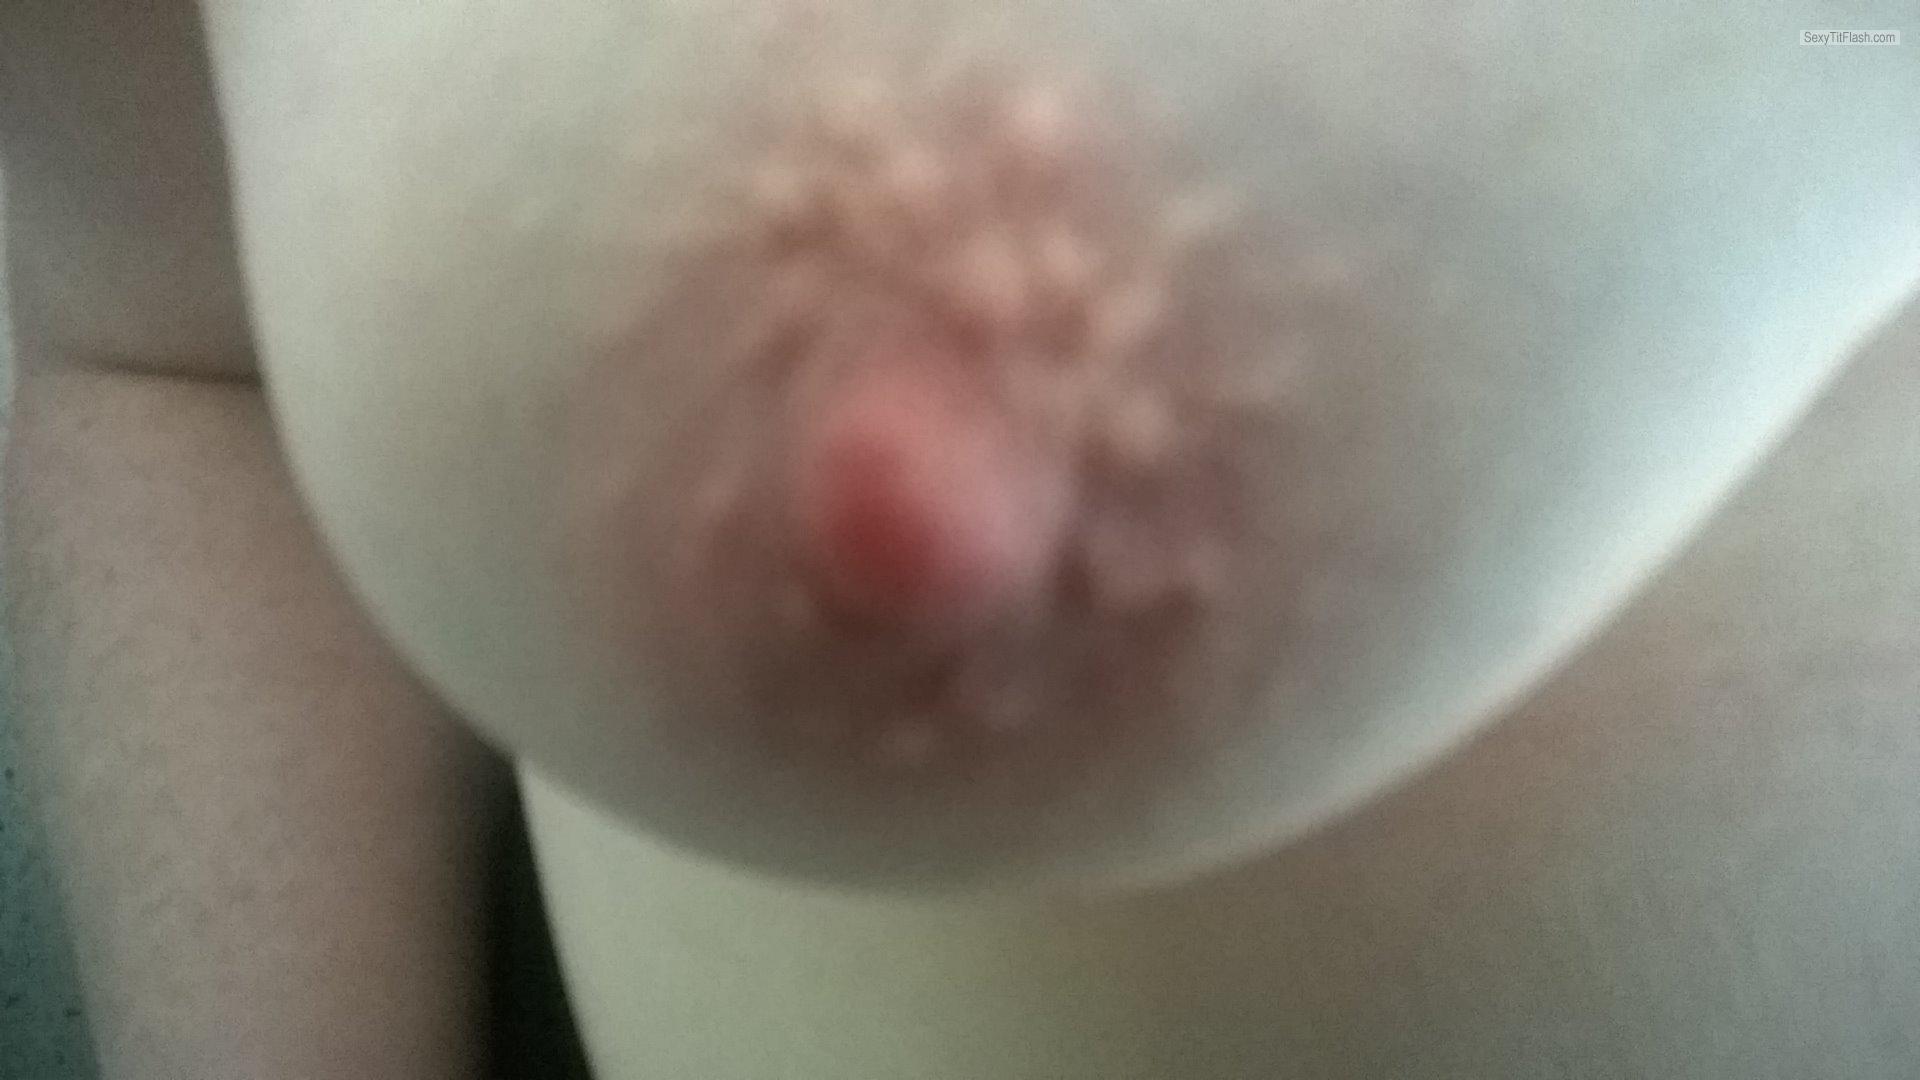 Tit Flash: My Medium Tits - Topless Scall1192@gmail.com from United Kingdom